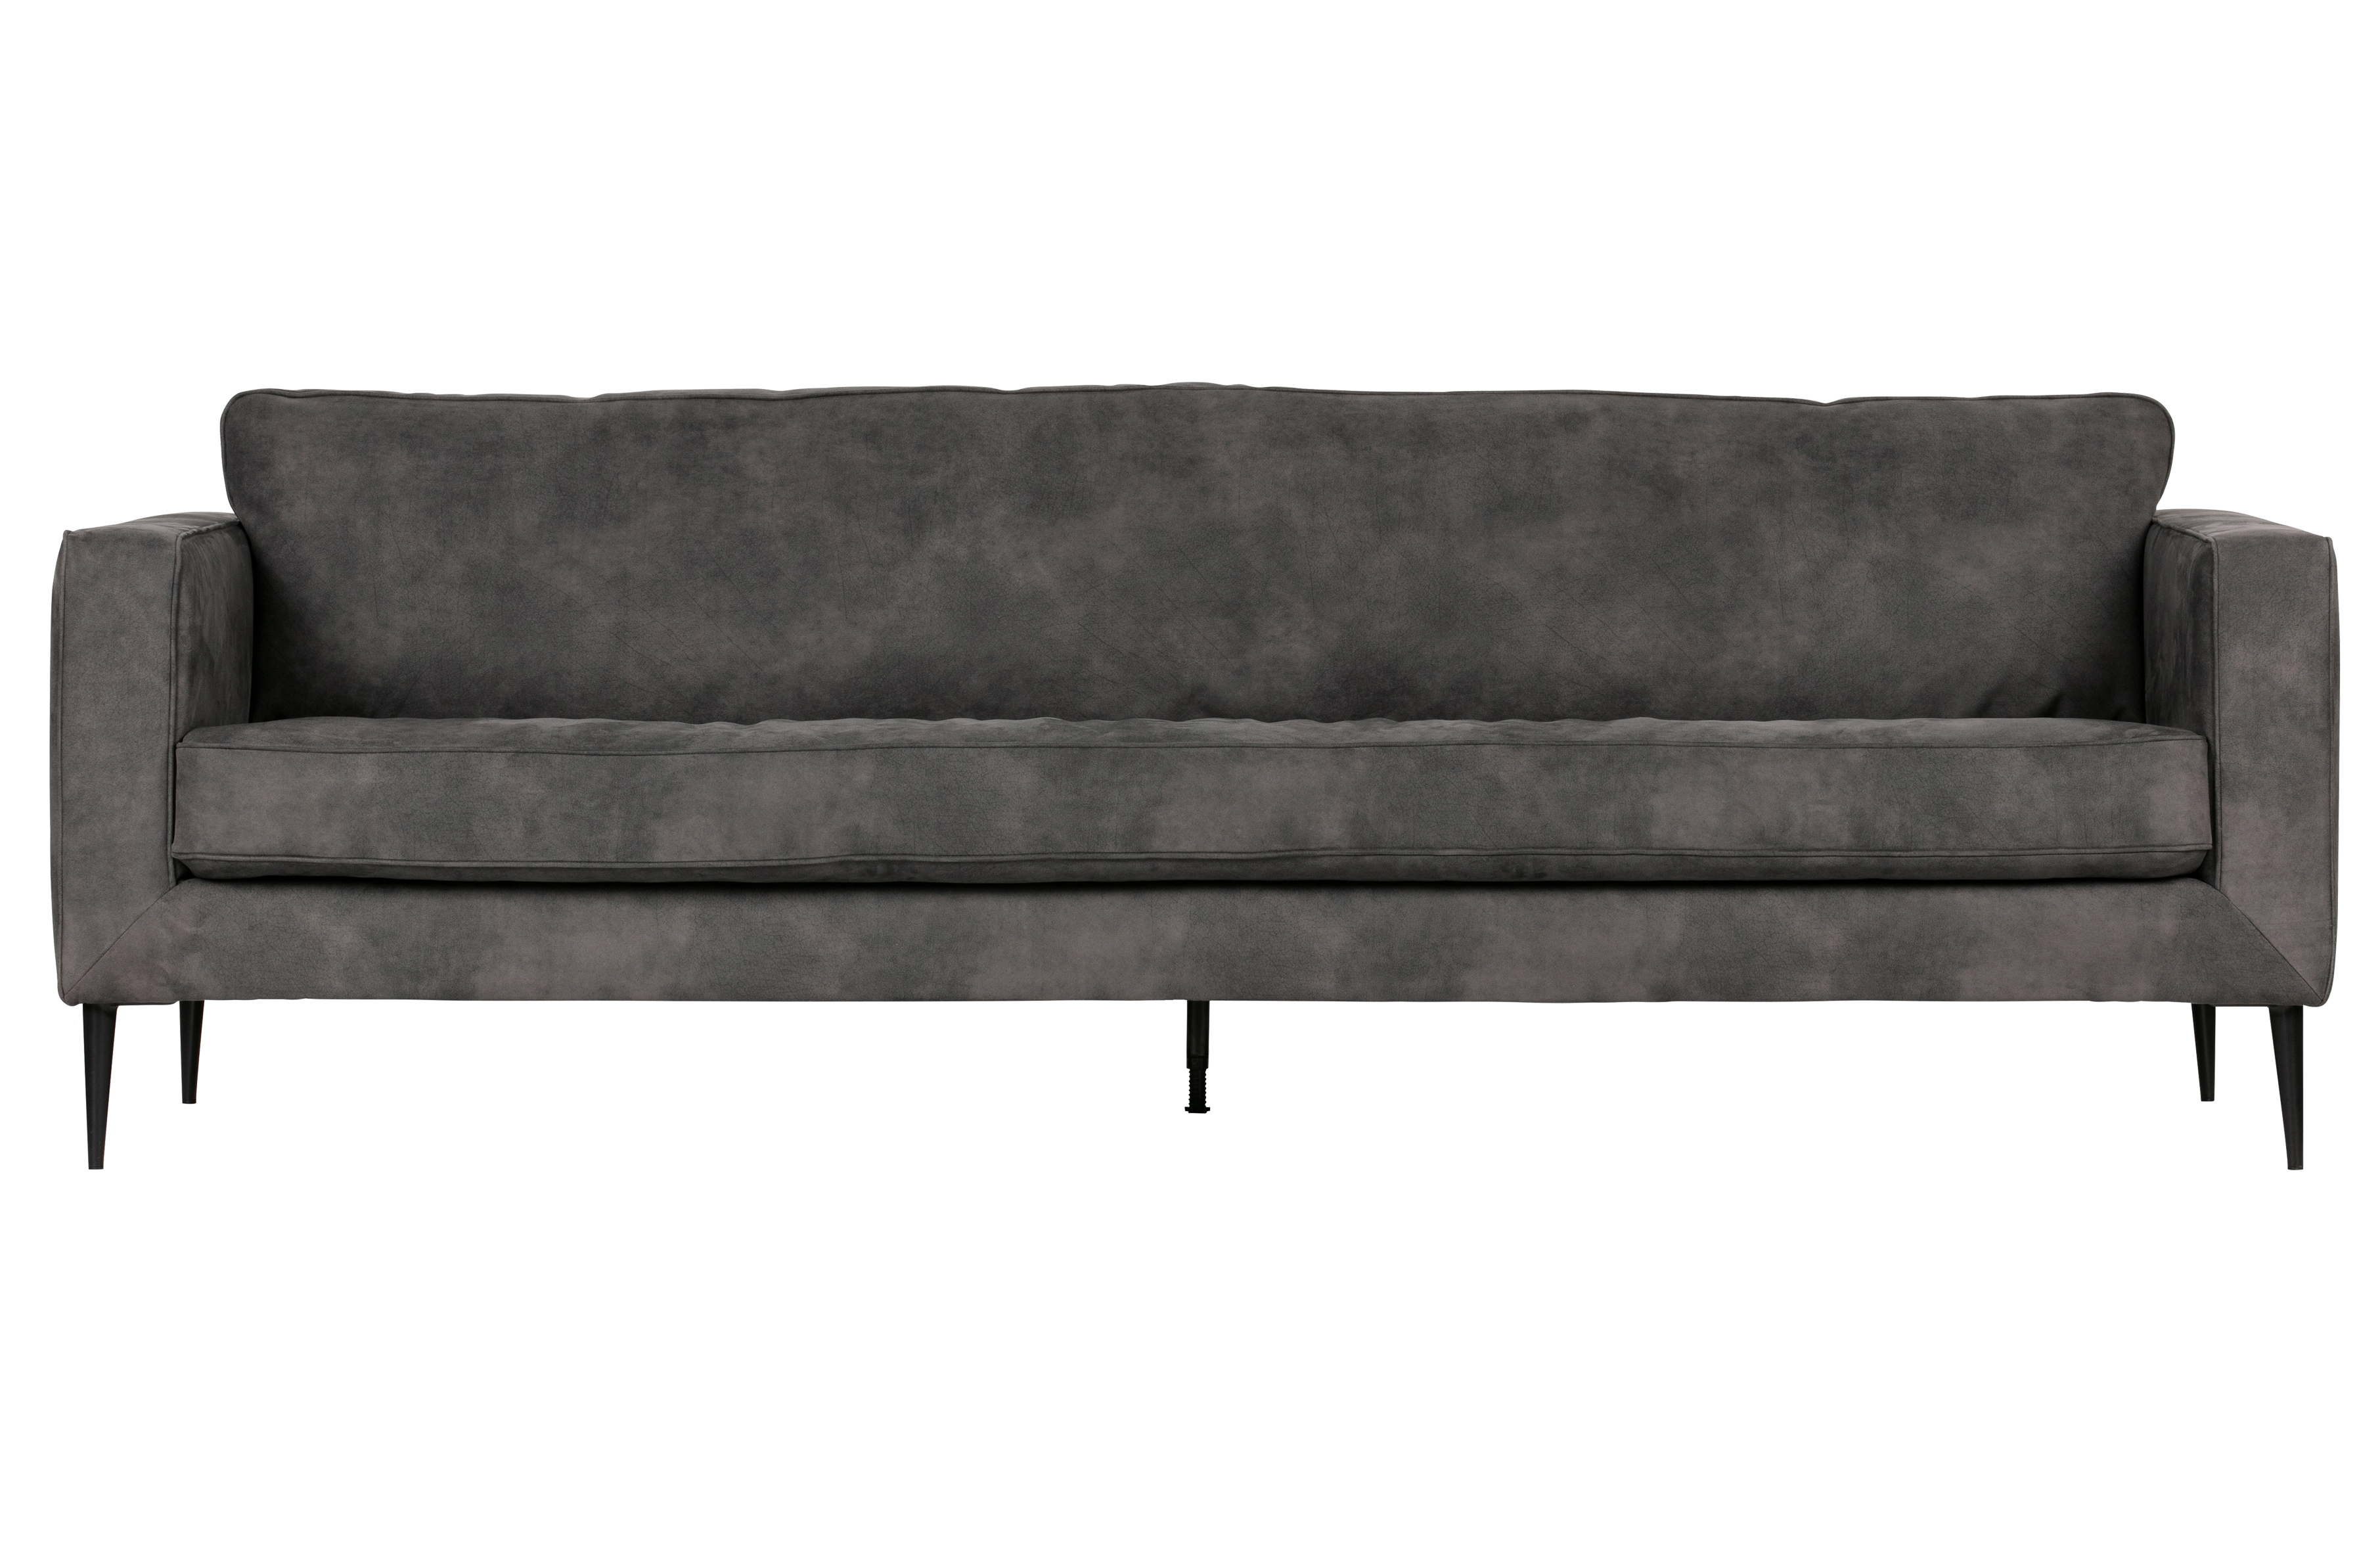 VTWONEN Crew 3 pers. sofa - mørkegrå polyester med ruskindslook og sort metal